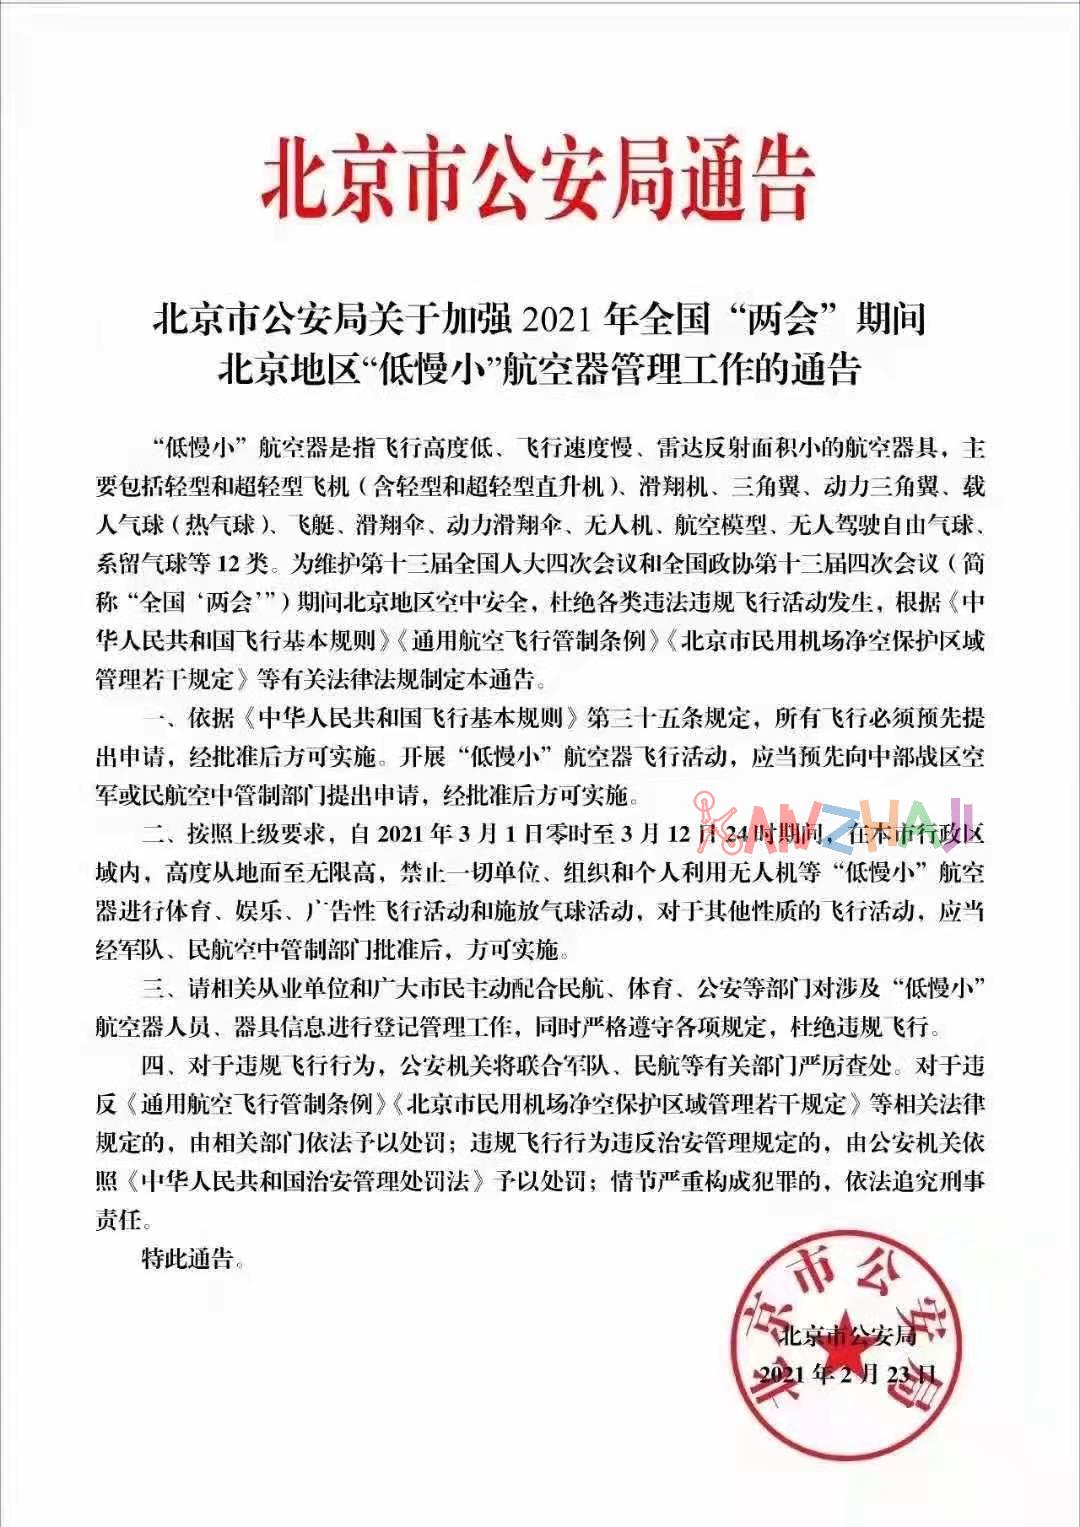 3月1日至12日北京地区禁飞“低慢小”航空器